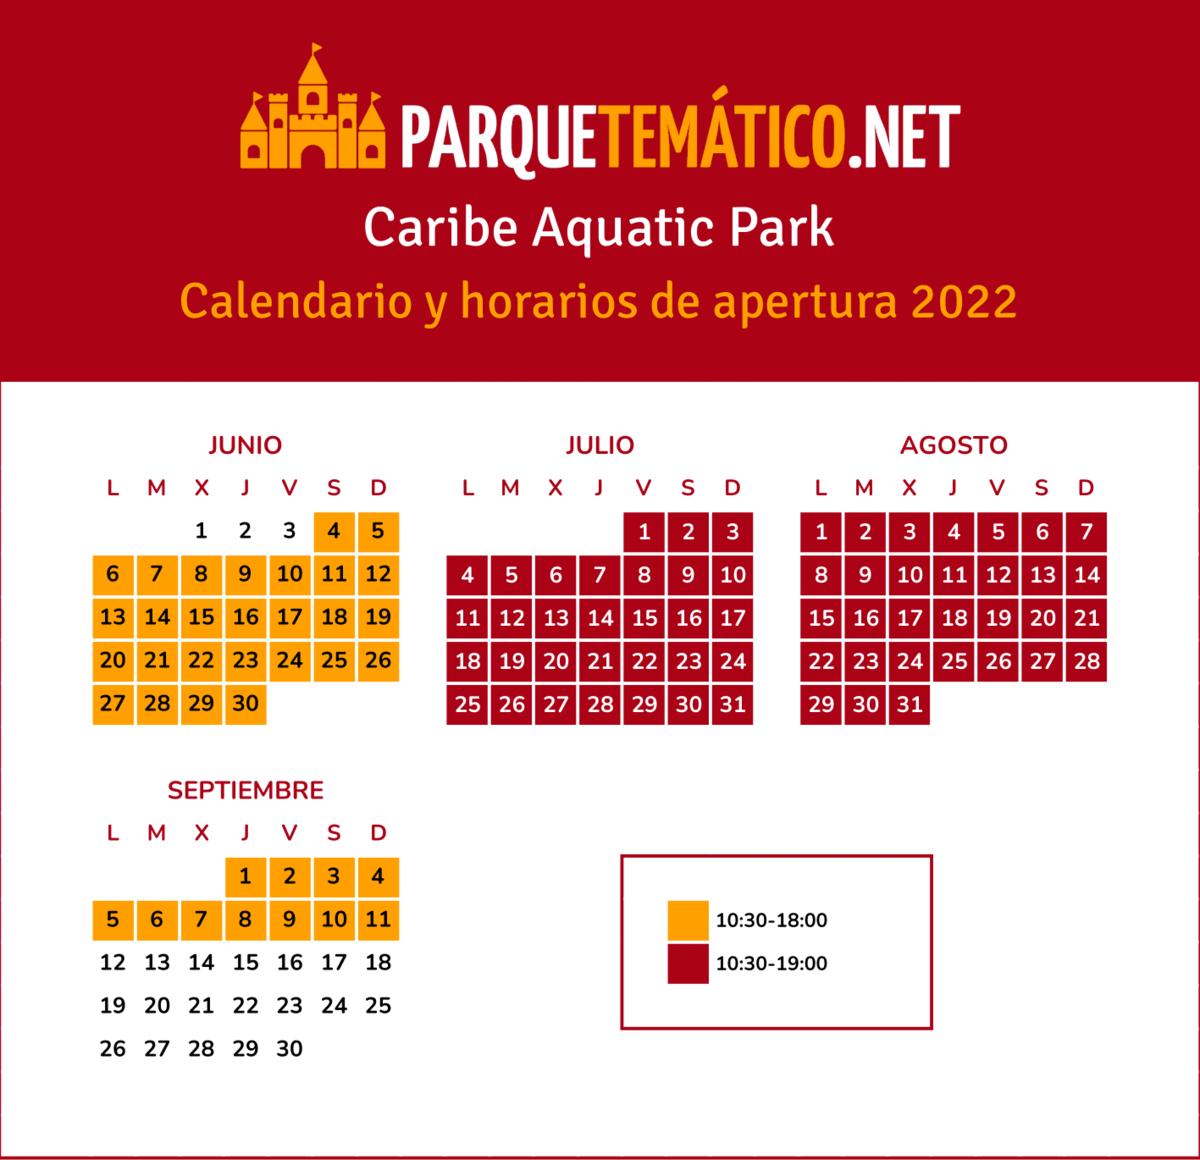 Calendario y horarios de apertura de PortAventura Caribe Aquatic Park en 2022